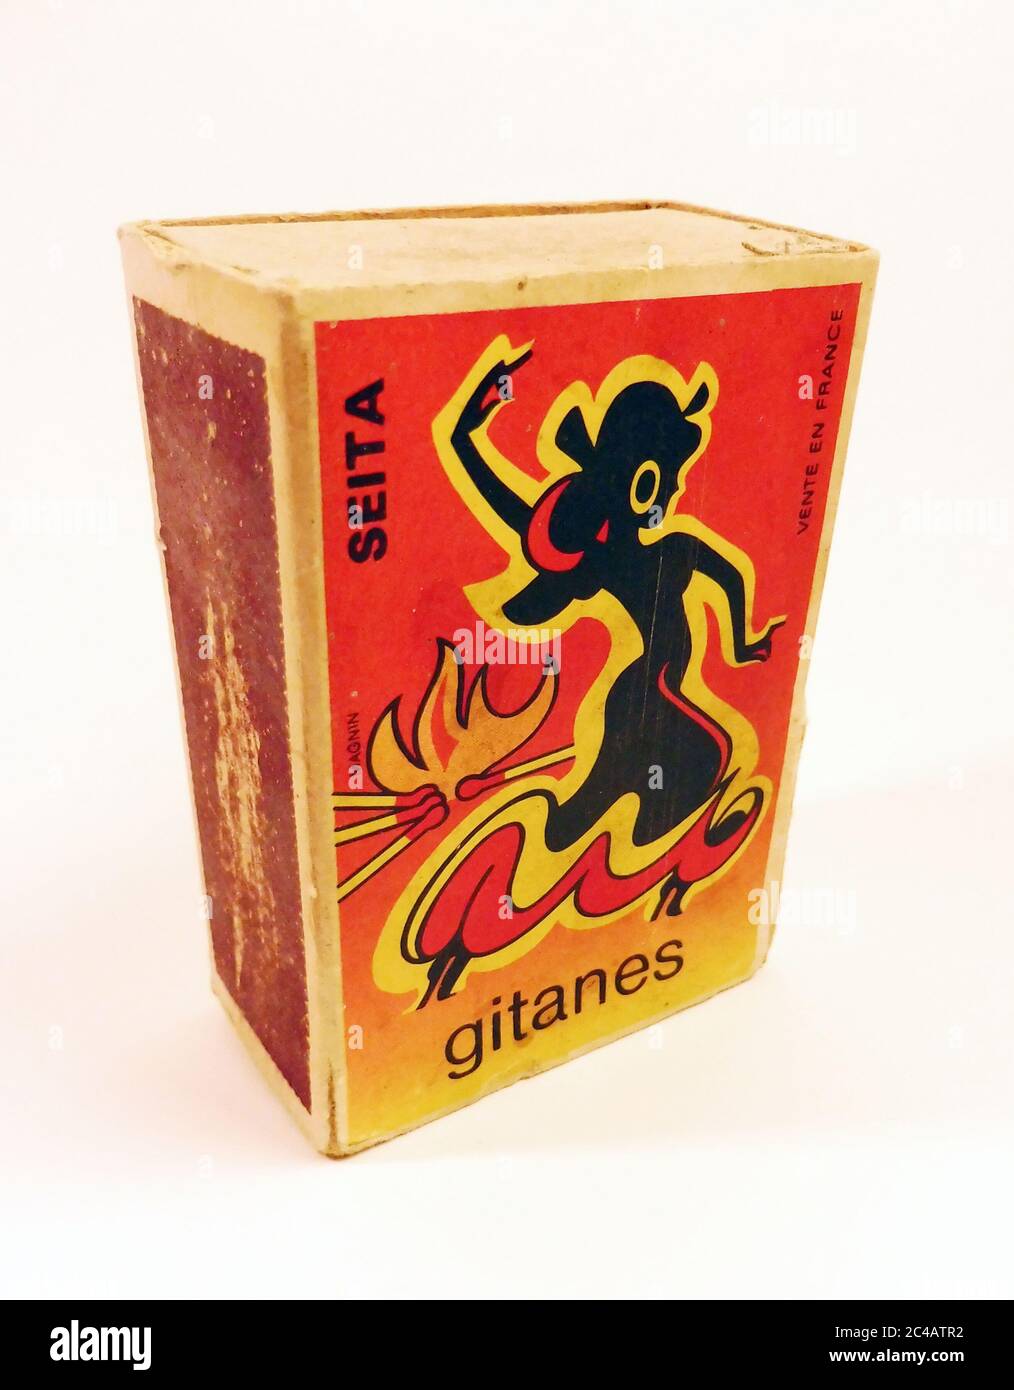 Boite d allumette Gitanes vers 1960 / Gitanes Matchbox circa 1960 Foto Stock